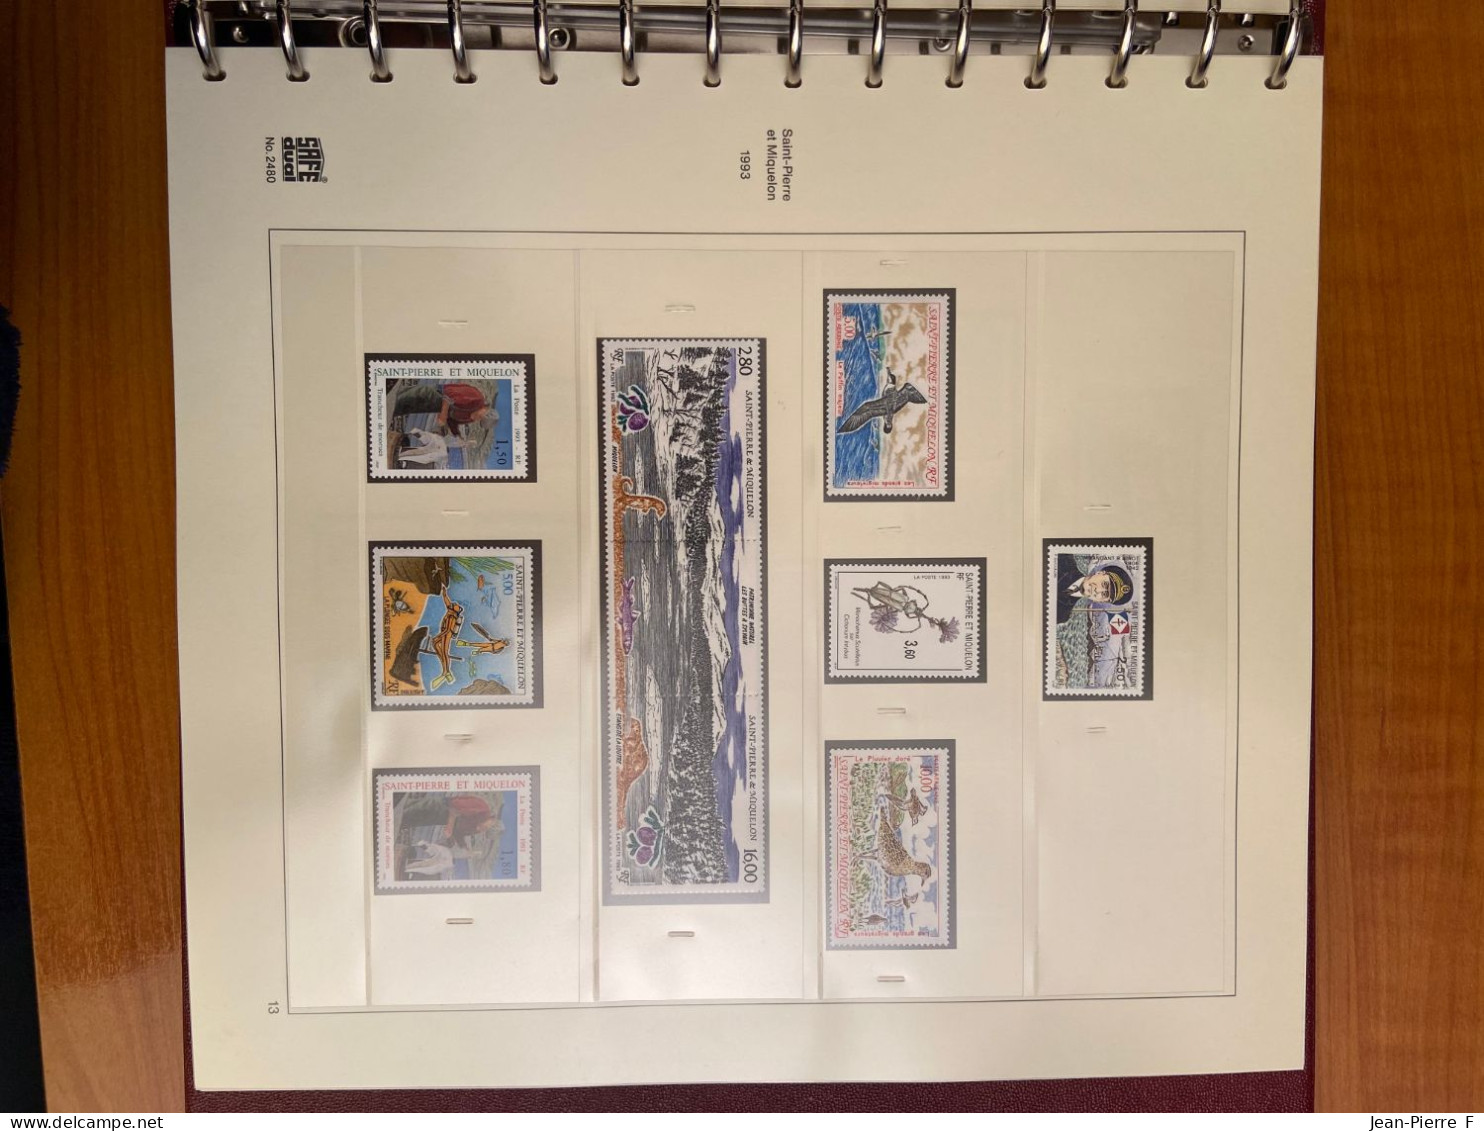 Album de 350 timbres neufs de Saint Pierre et Miquelon – 1991 à 2006 incluse